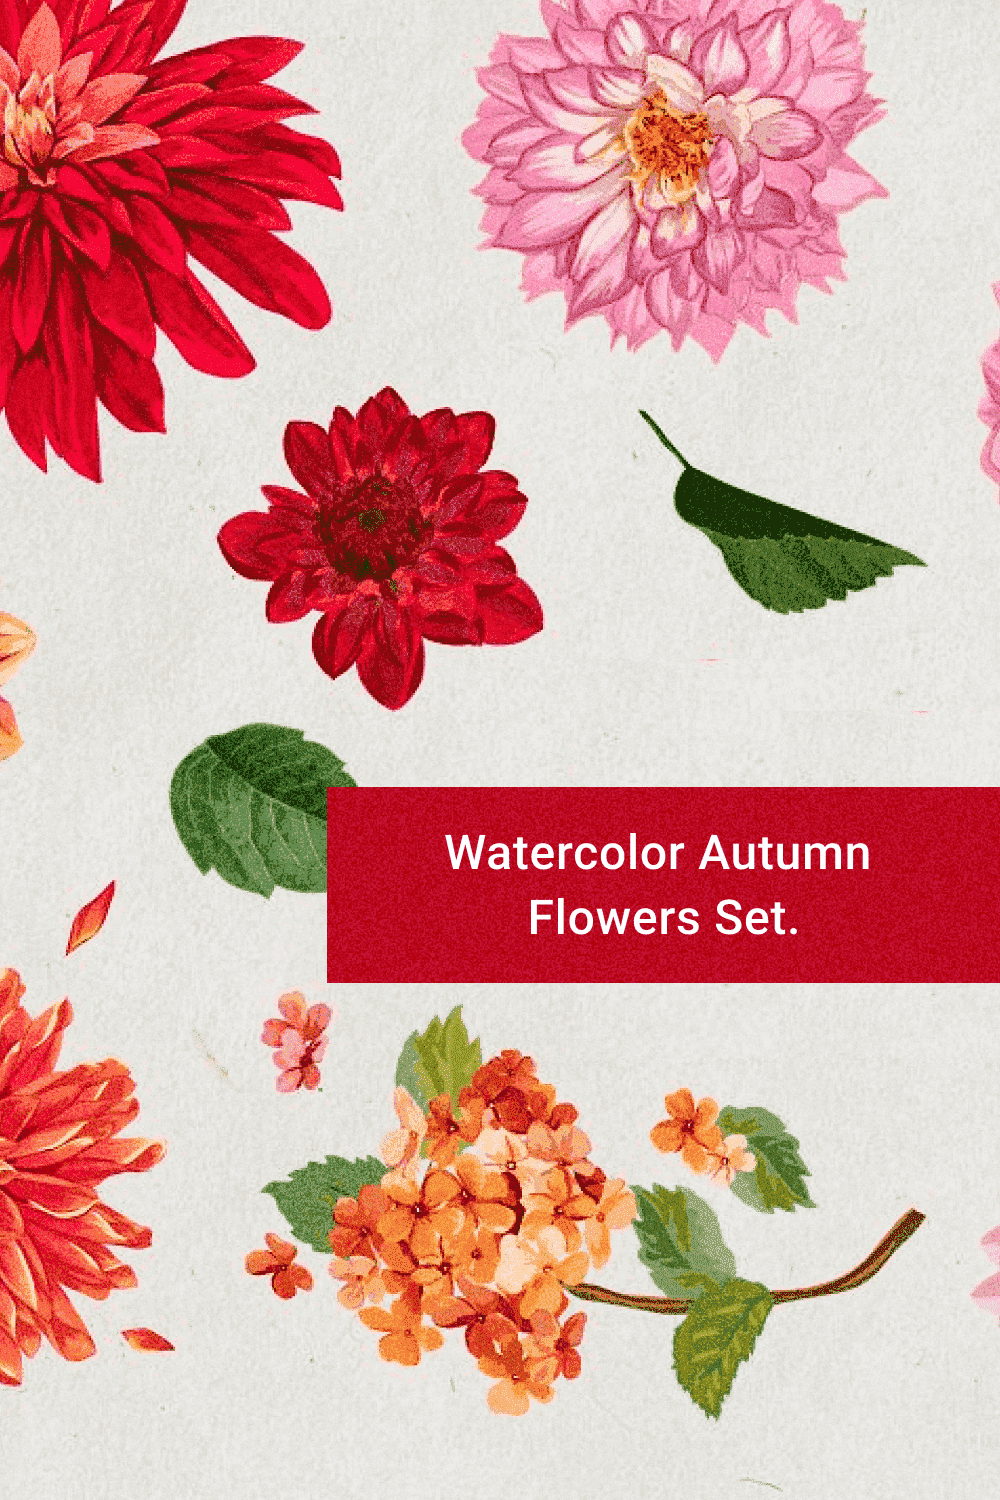 Watercolor Autumn Flower Set - Pinterest Image Preview.